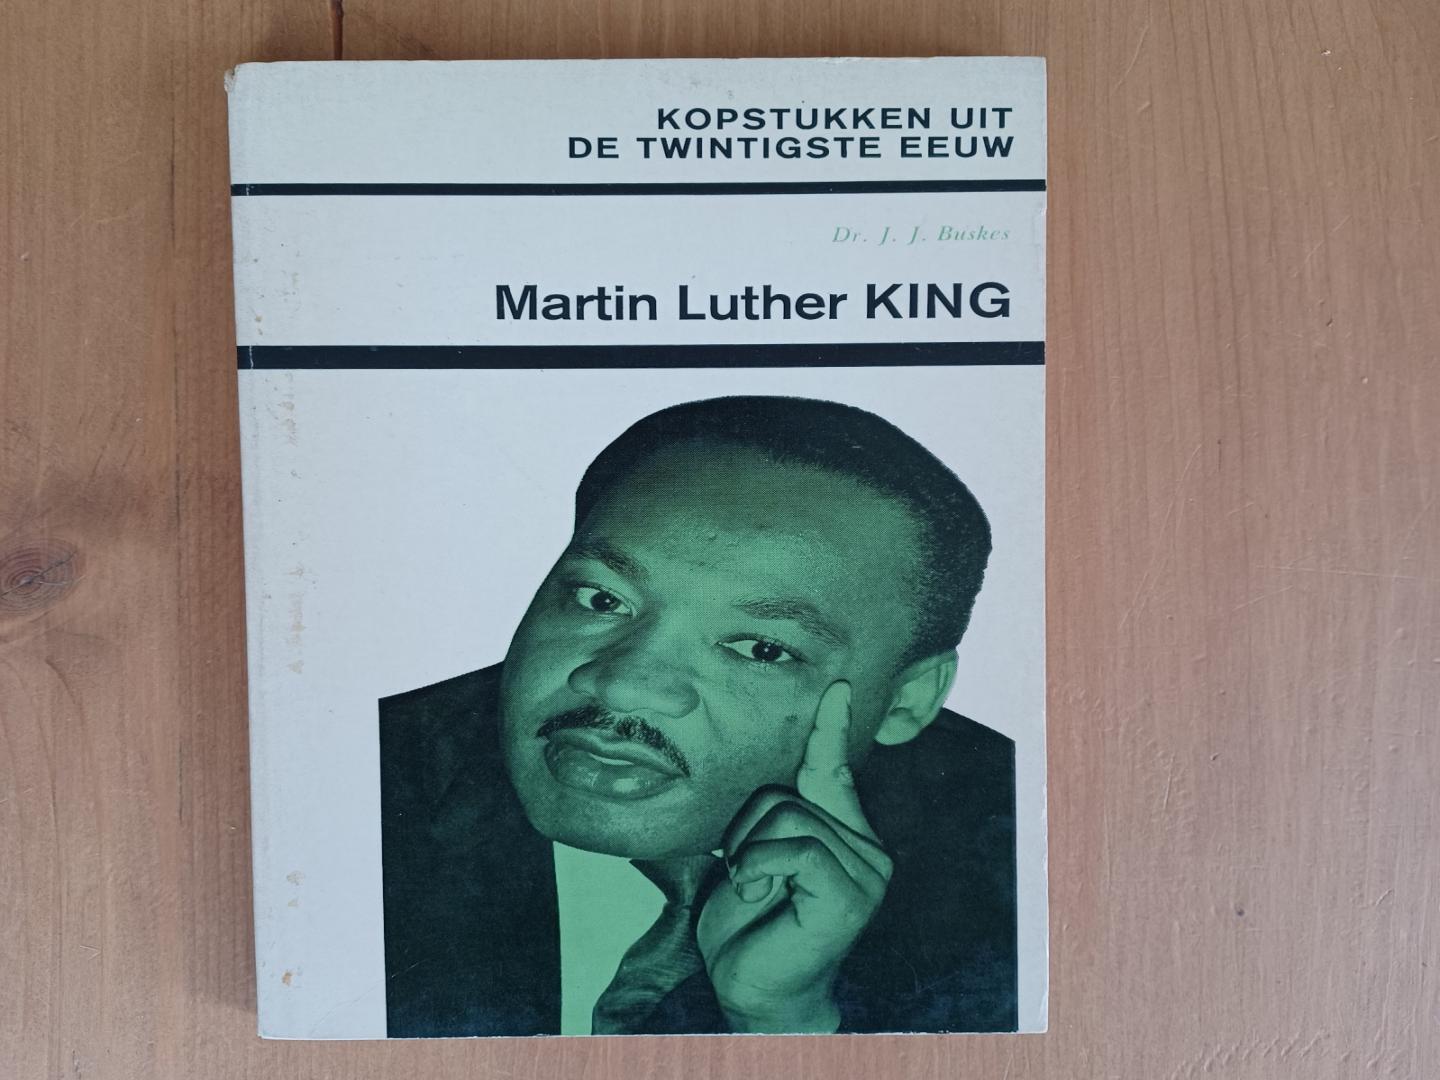 Buskes, dr.J.J. - Martin Luther King, Kopstukken uit de twintigste eeuw